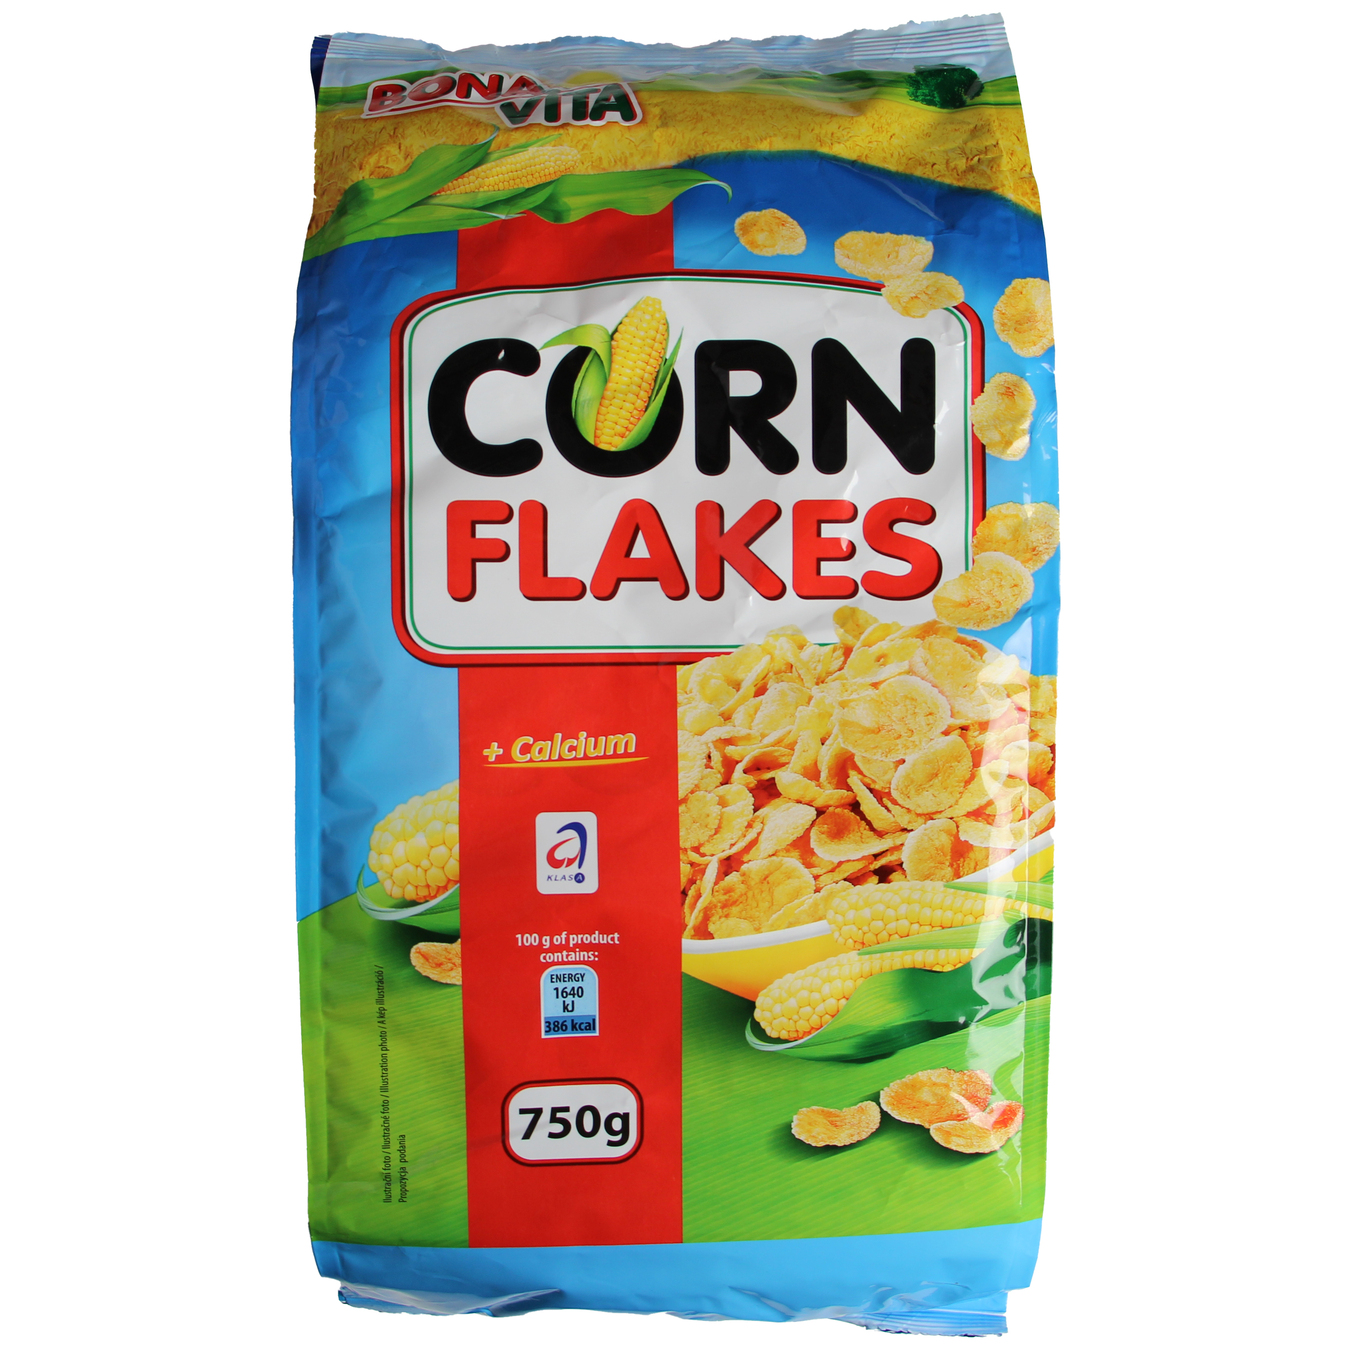 Bona Vita Corn Flakes 750g